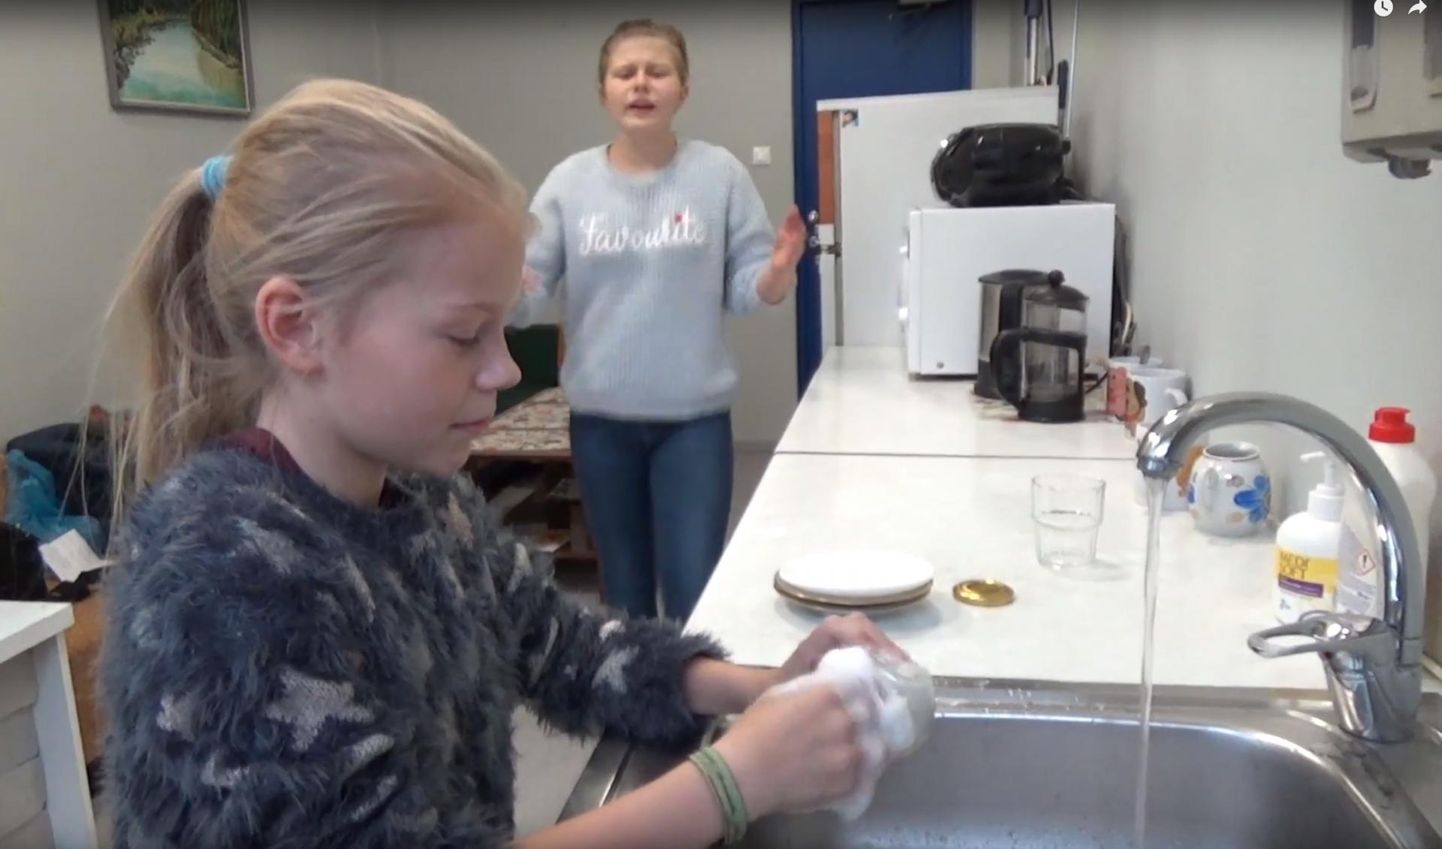 Kas nõusid peab pesema, lastes veel lakkamatult voolata, küsisid Väike-Maarja gümnaasiumi 5. klassi õpilased oma veesäästuteemalises videos.